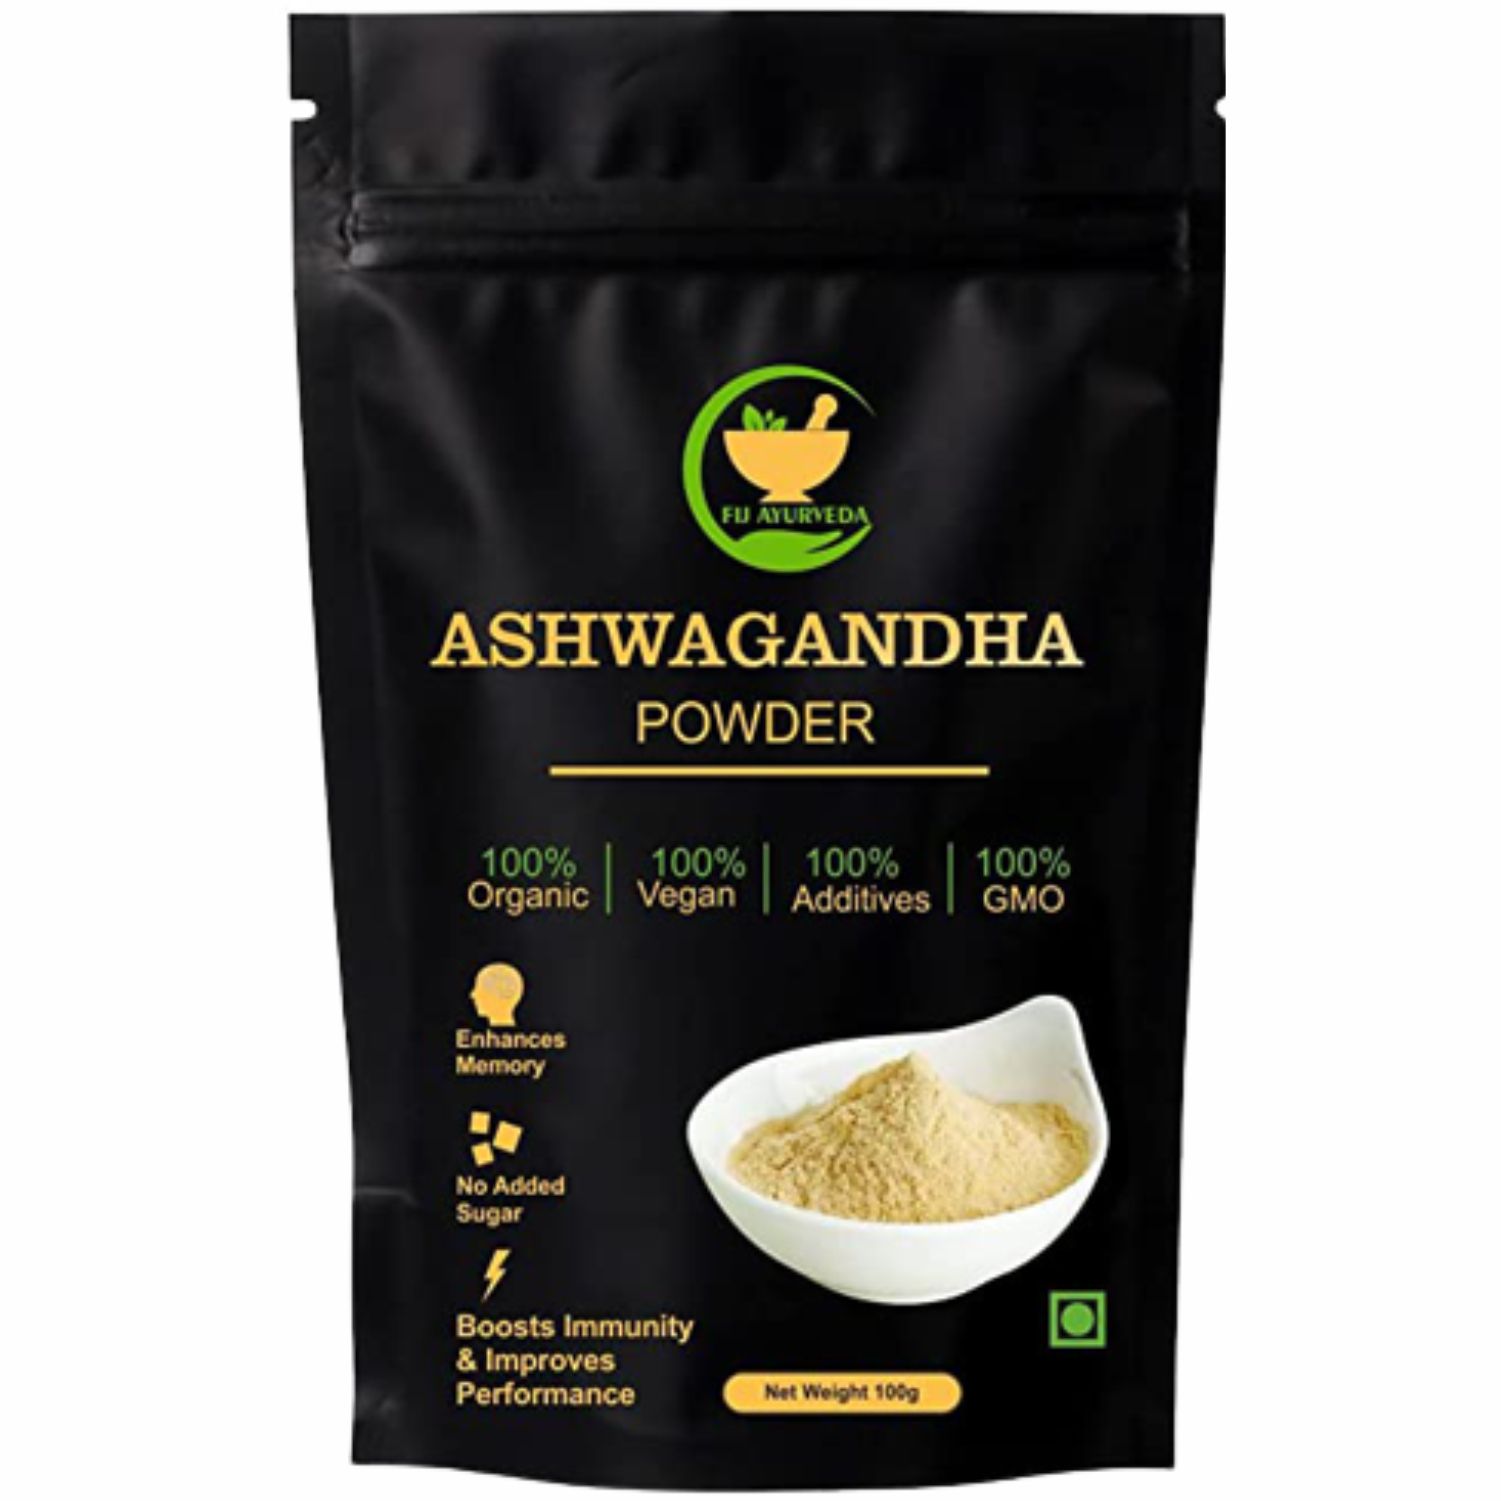     			FIJ AYURVEDA 100% Pure Ashwagandha Powder for Men & Women, 100 gm